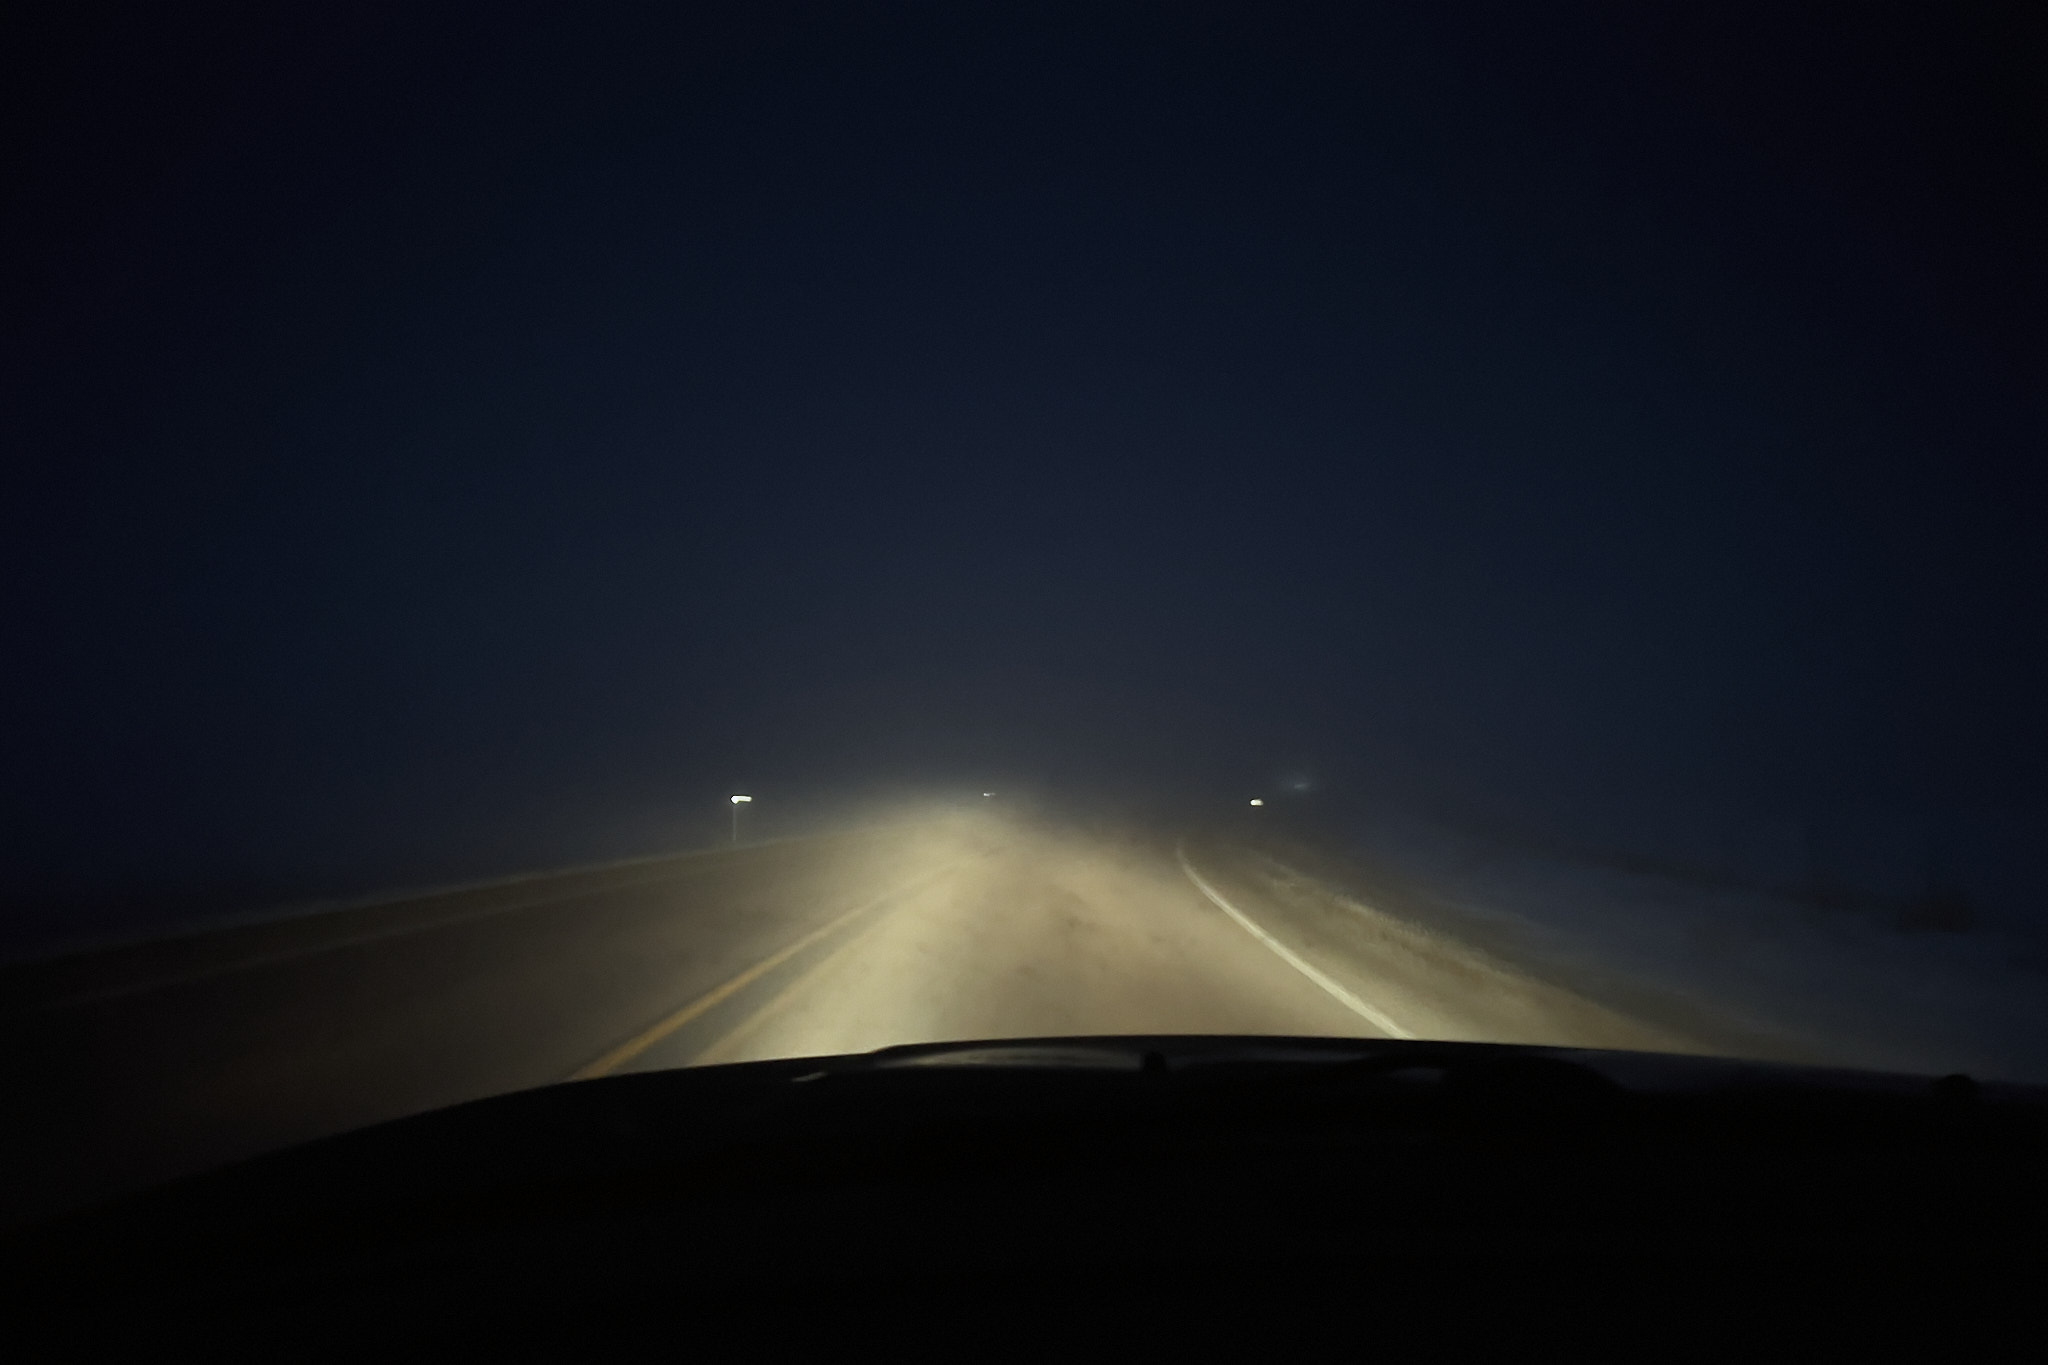 A dark fog on a dark morning taken inside a dark car